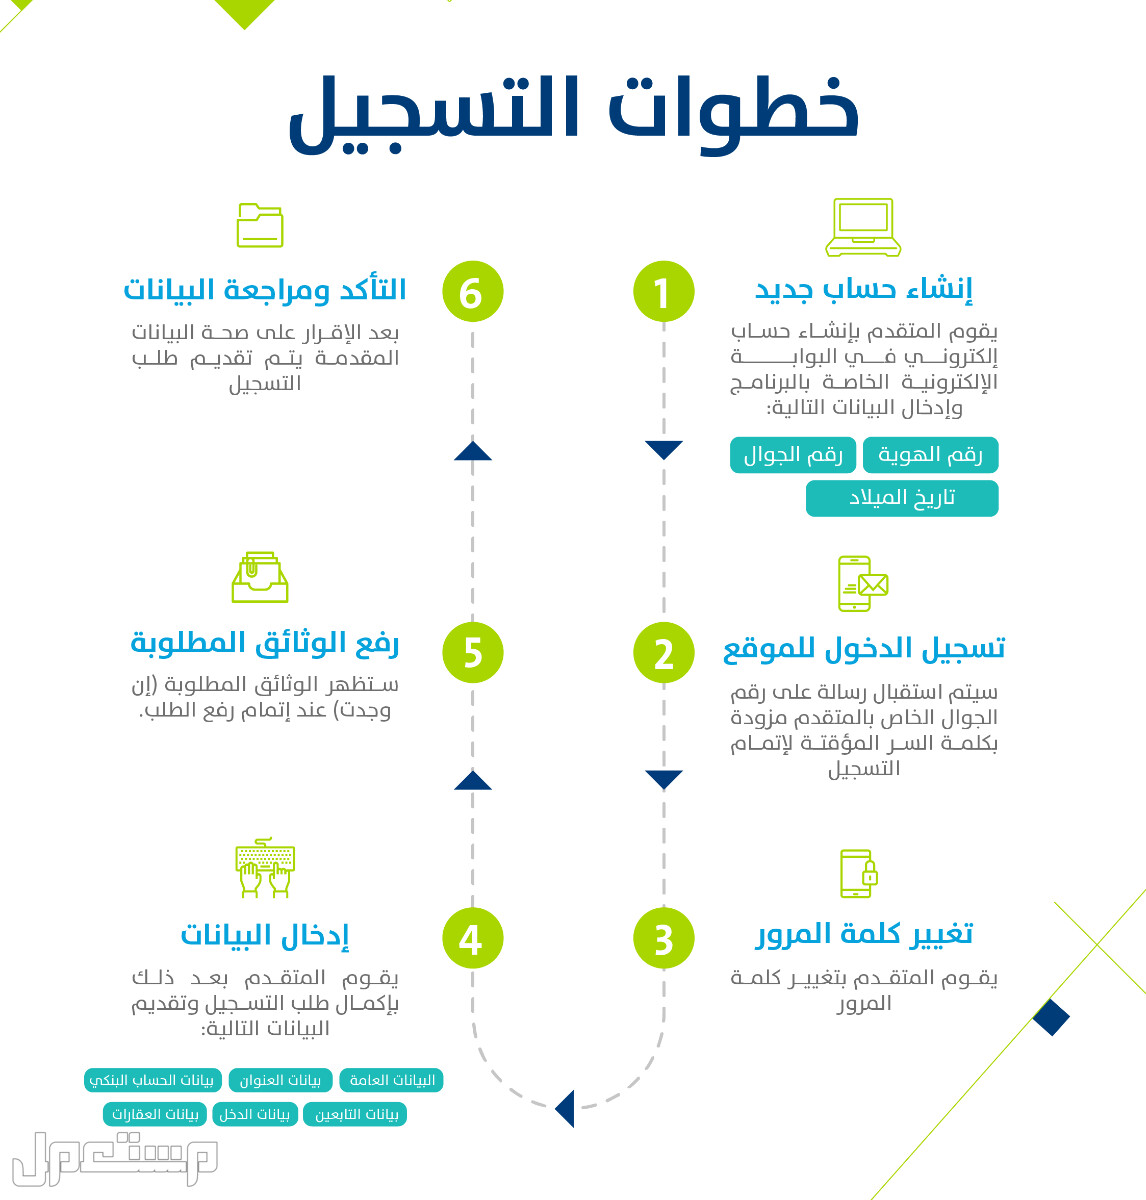 تعرف على كيفية التسجيل في حساب المواطن عقب تمديد الدعم الإضافي 1444 بالخطوات في ليبيا خطوات التسجيل